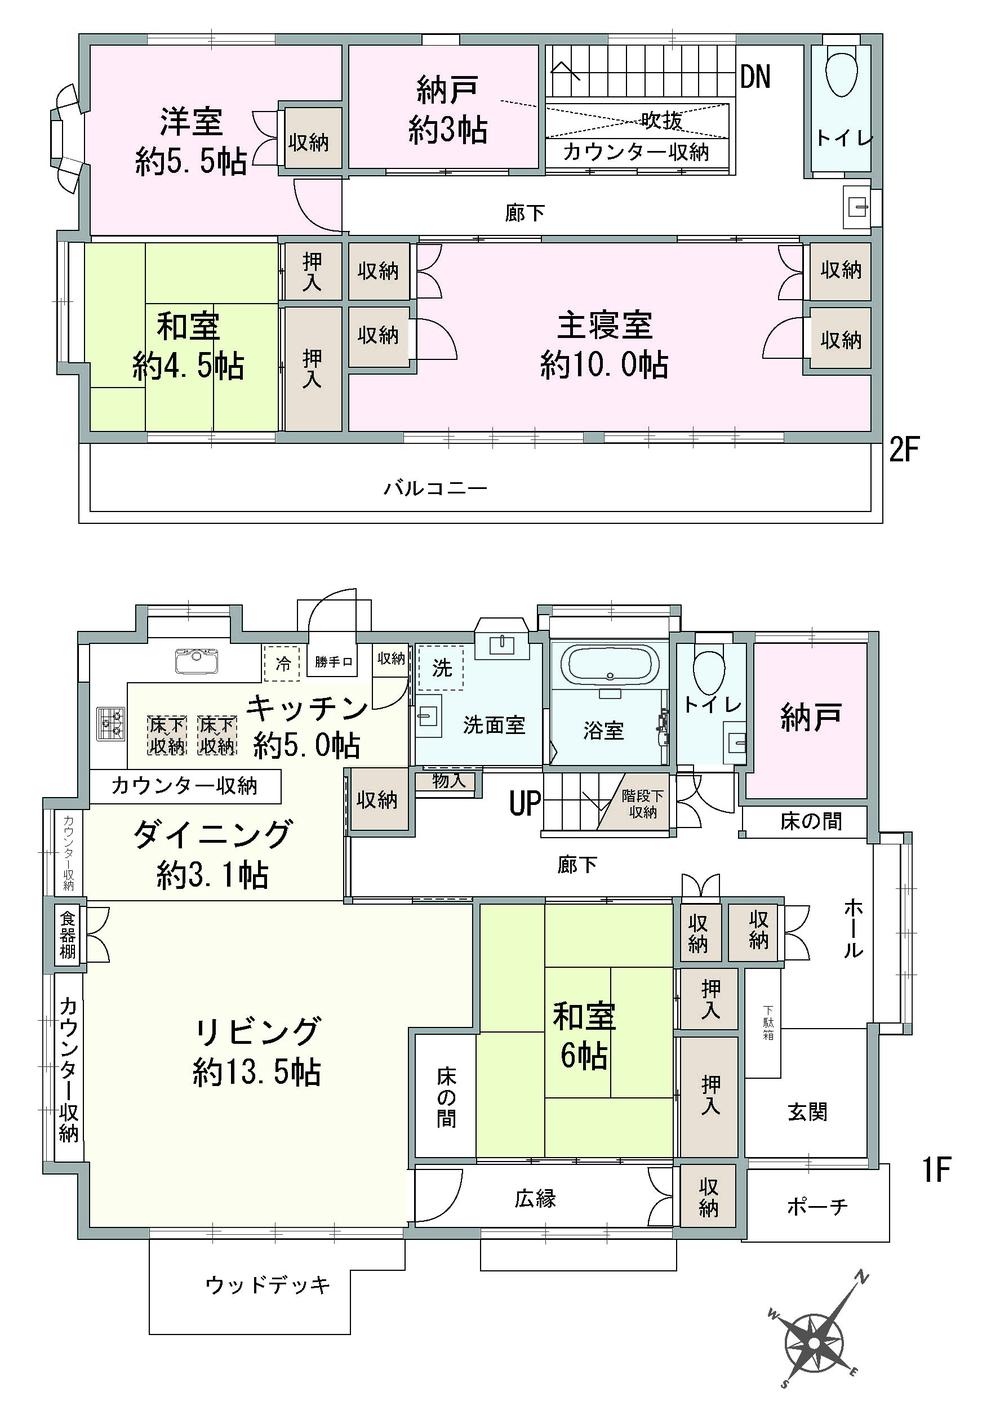 Floor plan. 19,800,000 yen, 3LDK + 2S (storeroom), Land area 213.31 sq m , Building area 142.11 sq m